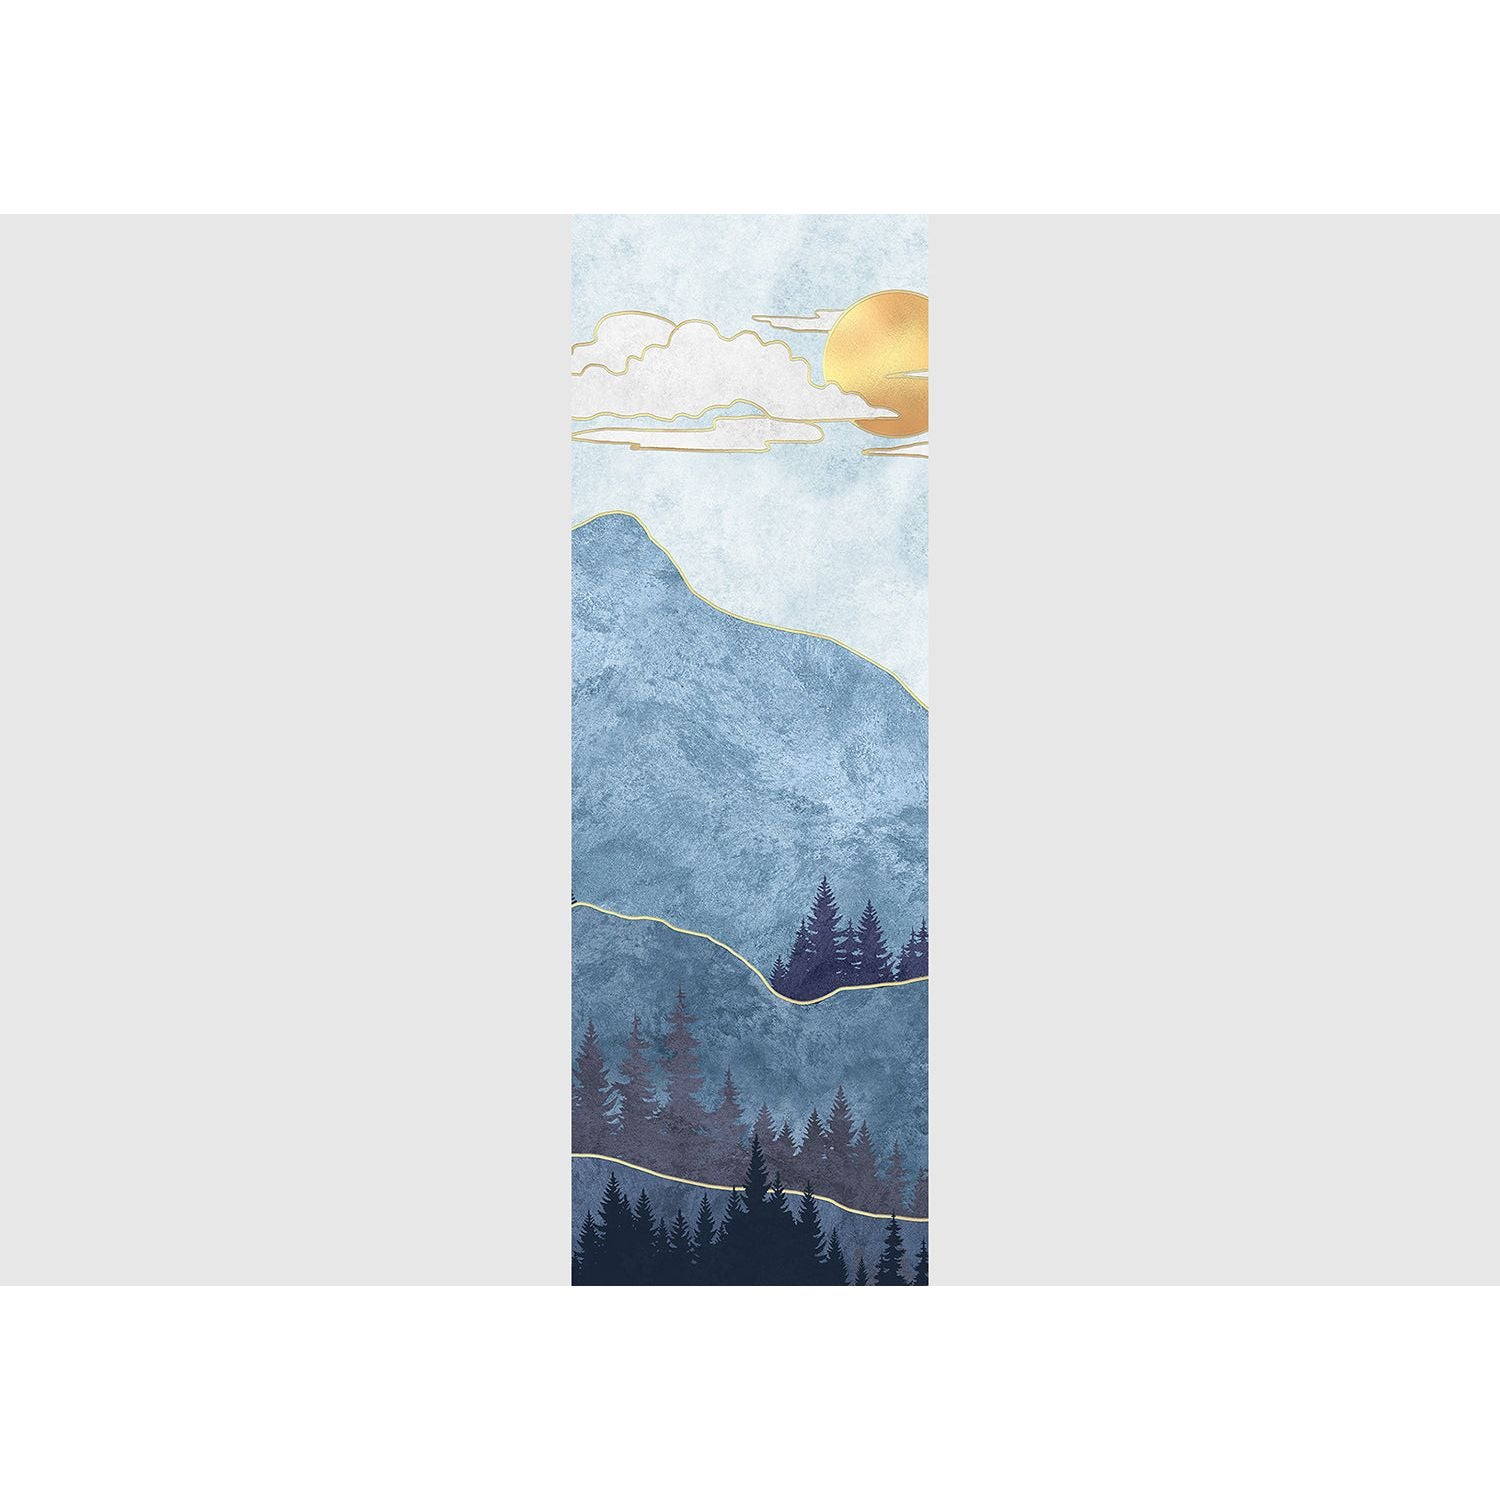 Skyward Summit: Mountain, Clouds, and Sun Wall Mural